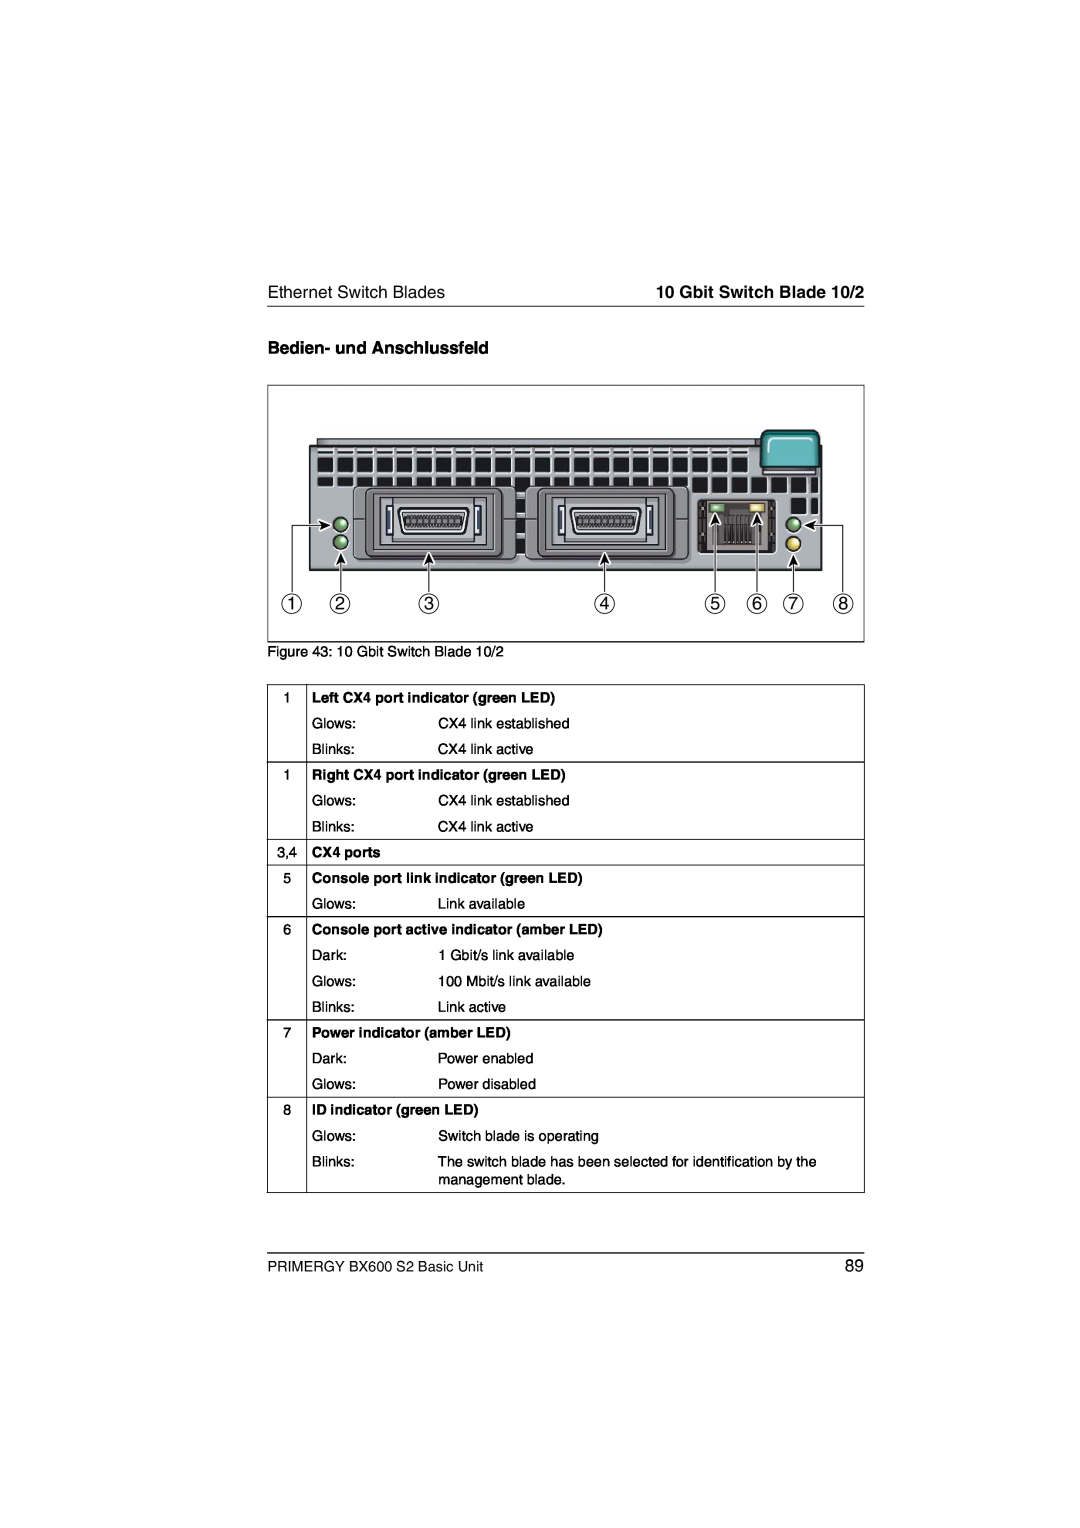 Fujitsu BX600 S2 manual Bedien- und Anschlussfeld, Ethernet Switch Blades, Gbit Switch Blade 10/2, CX4 ports 